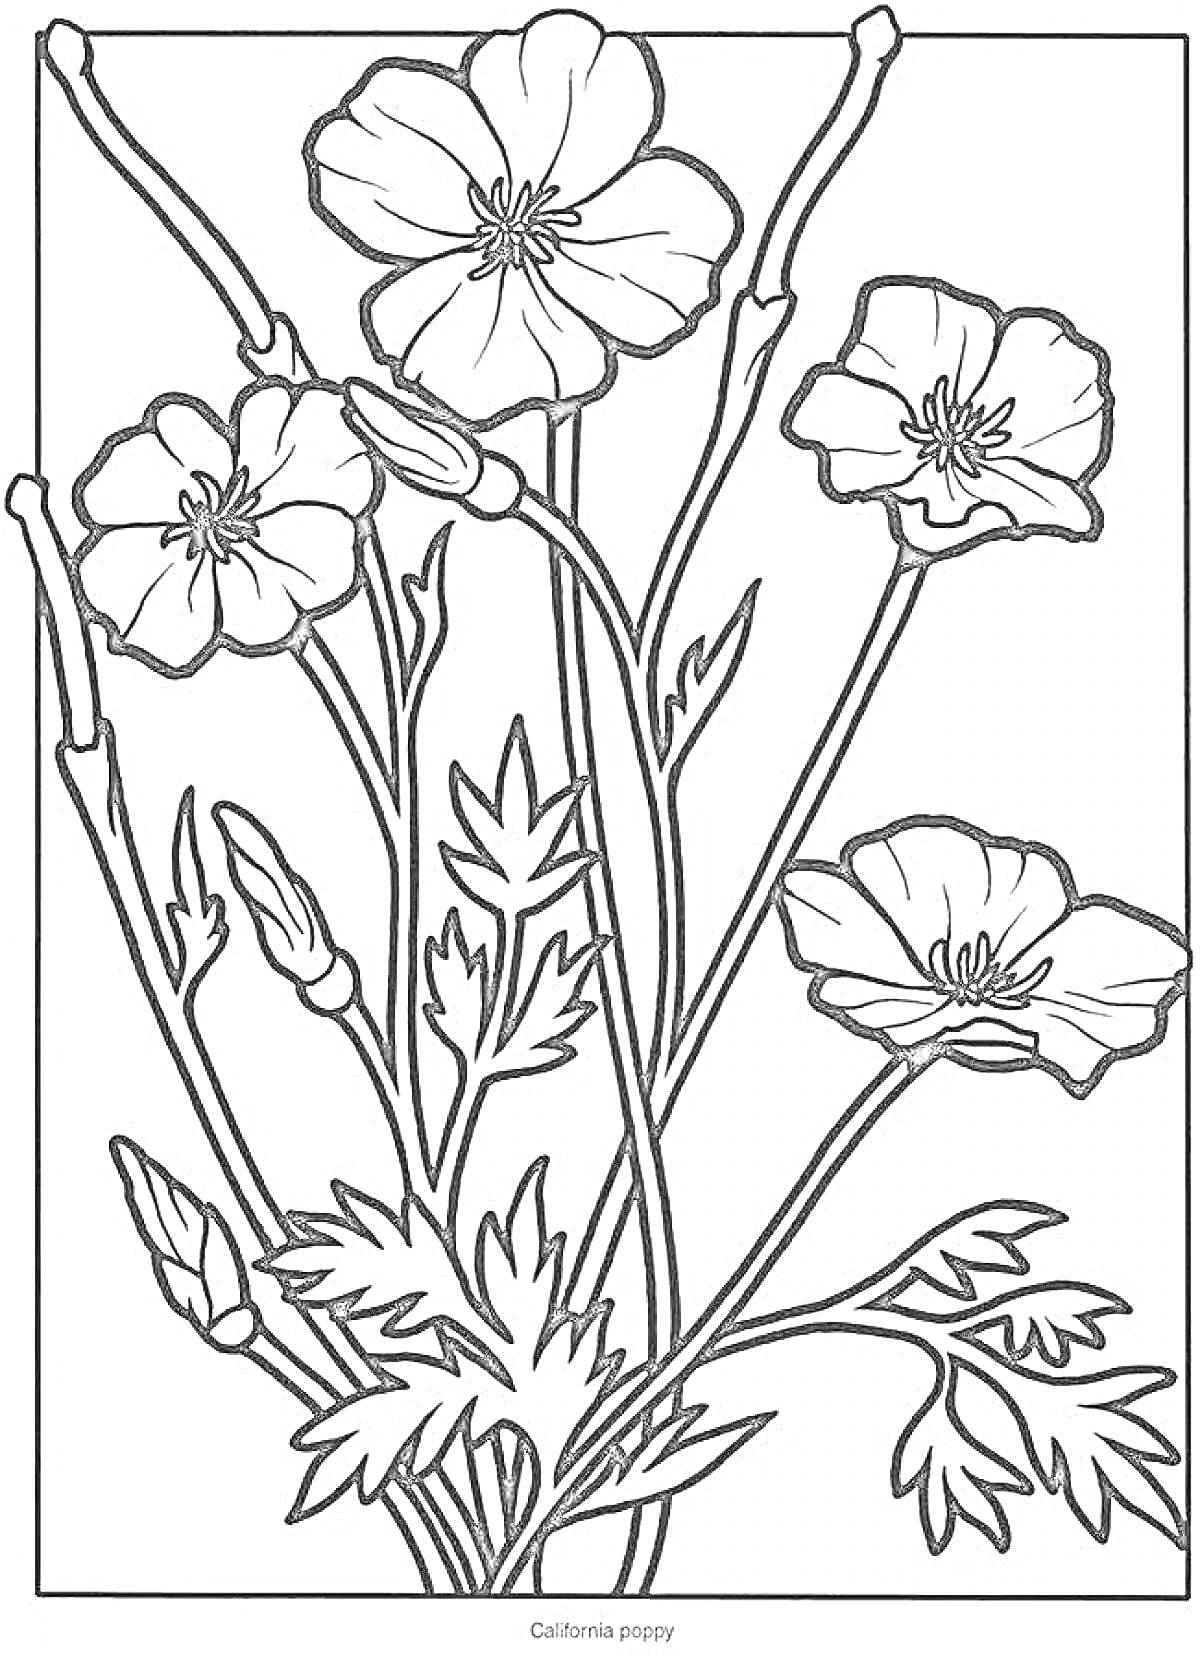 Раскраска Полевые цветы - калифорнийские маки, несколько стеблей с цветами и бутонами